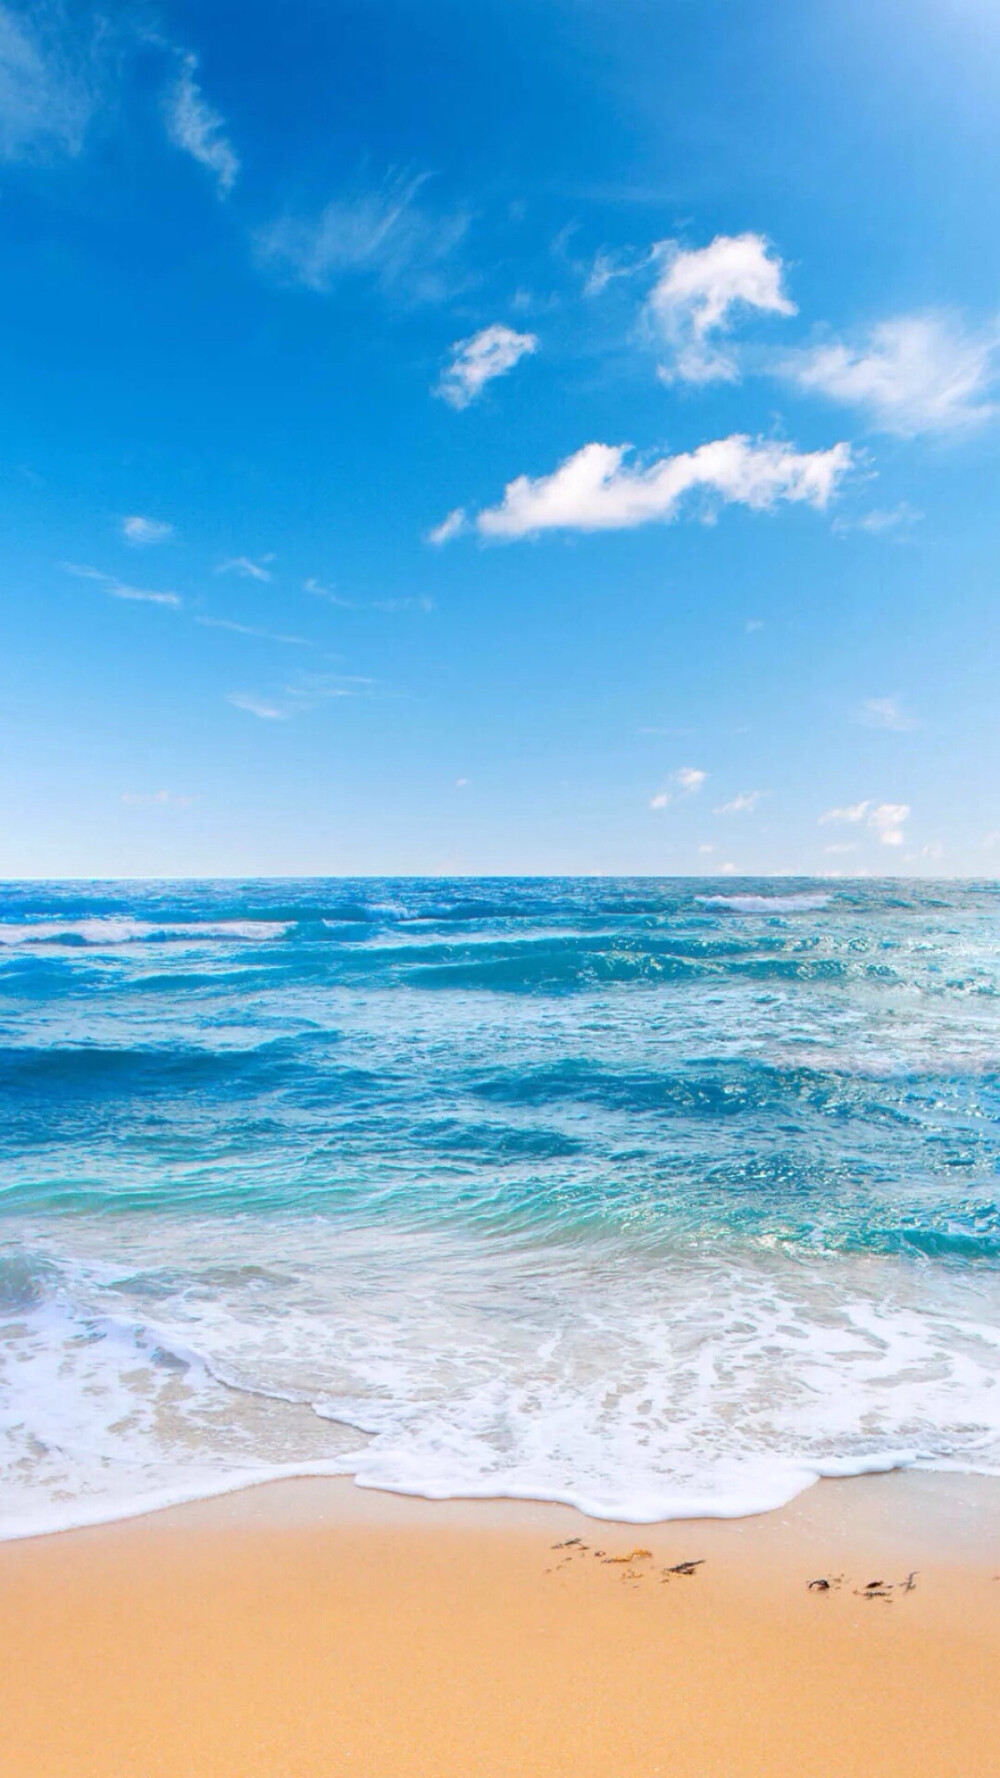 唯美自然风景蓝天碧海沙滩海洋唯美风景 堆糖 美图壁纸兴趣社区